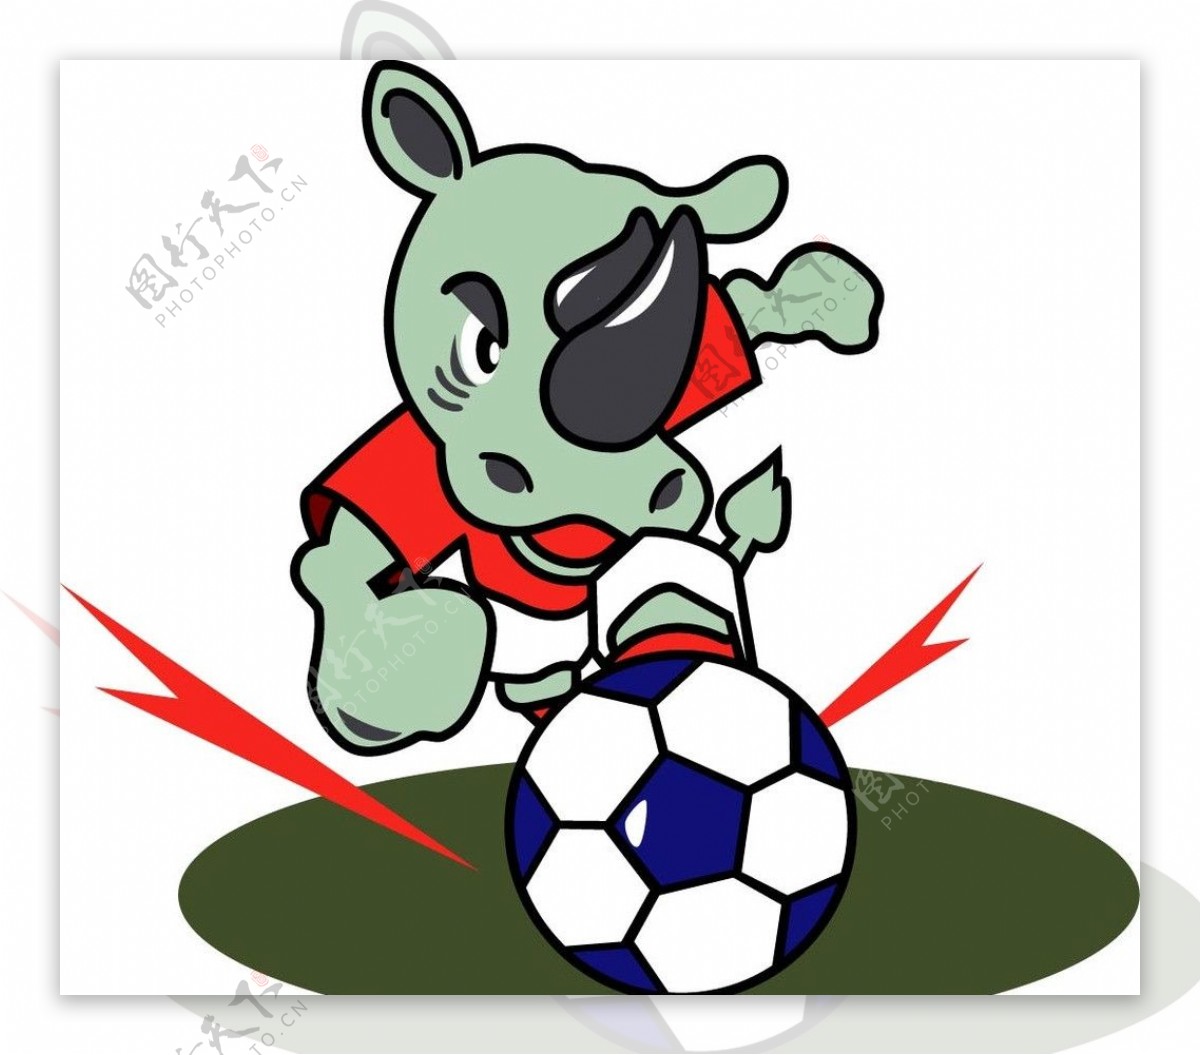 2002世界杯吉祥物图片